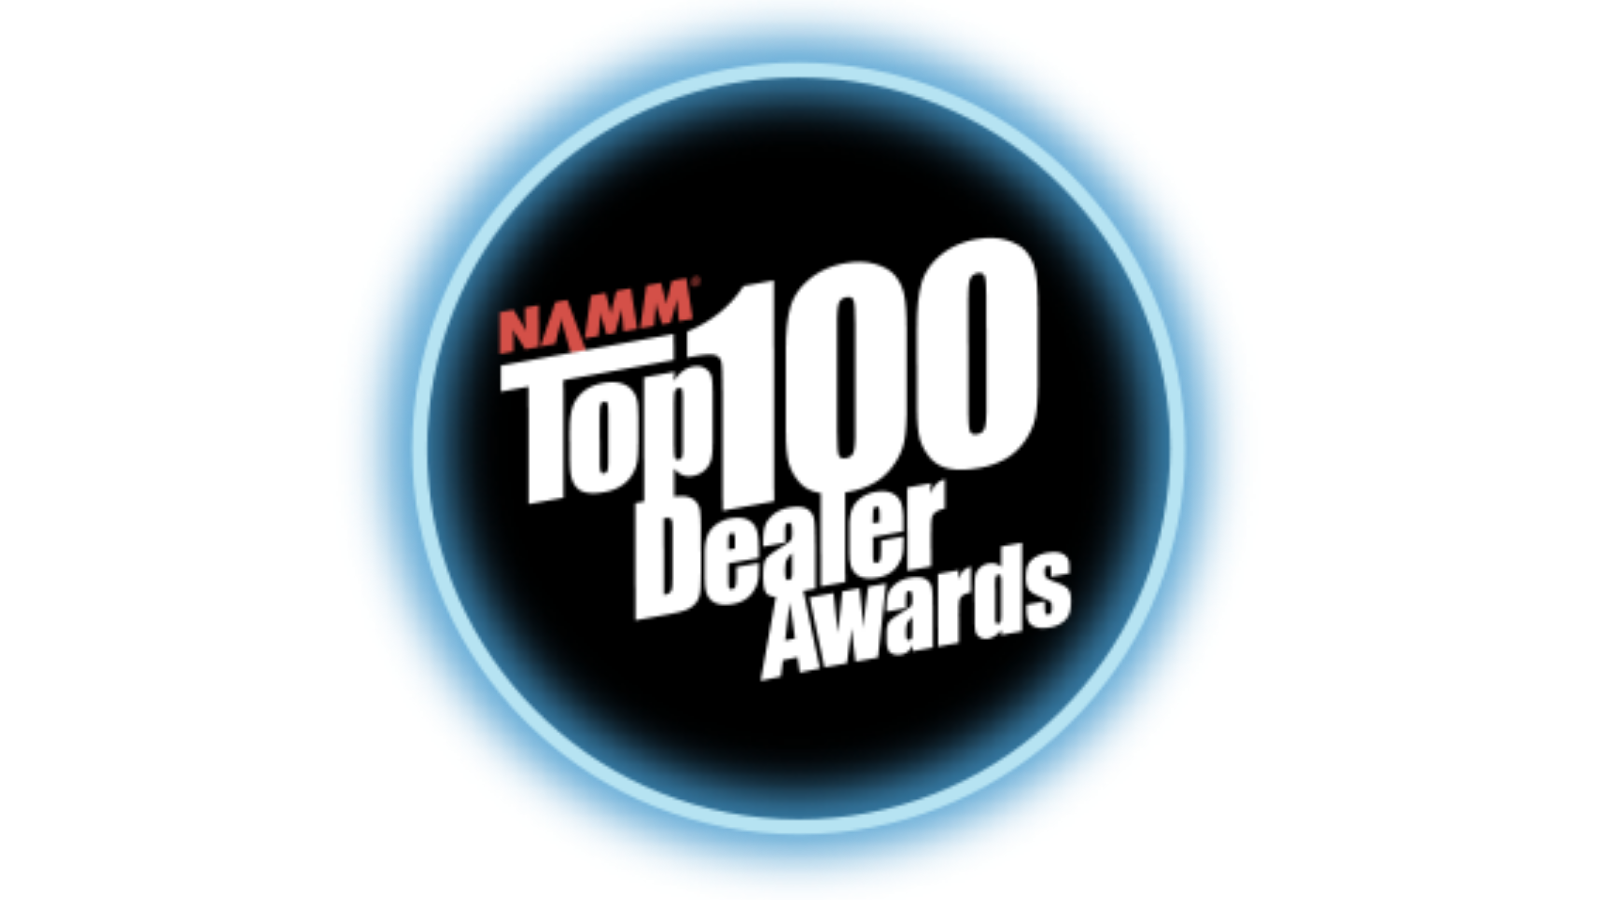 NAMM Top 100 Dealer Awards A Look Back